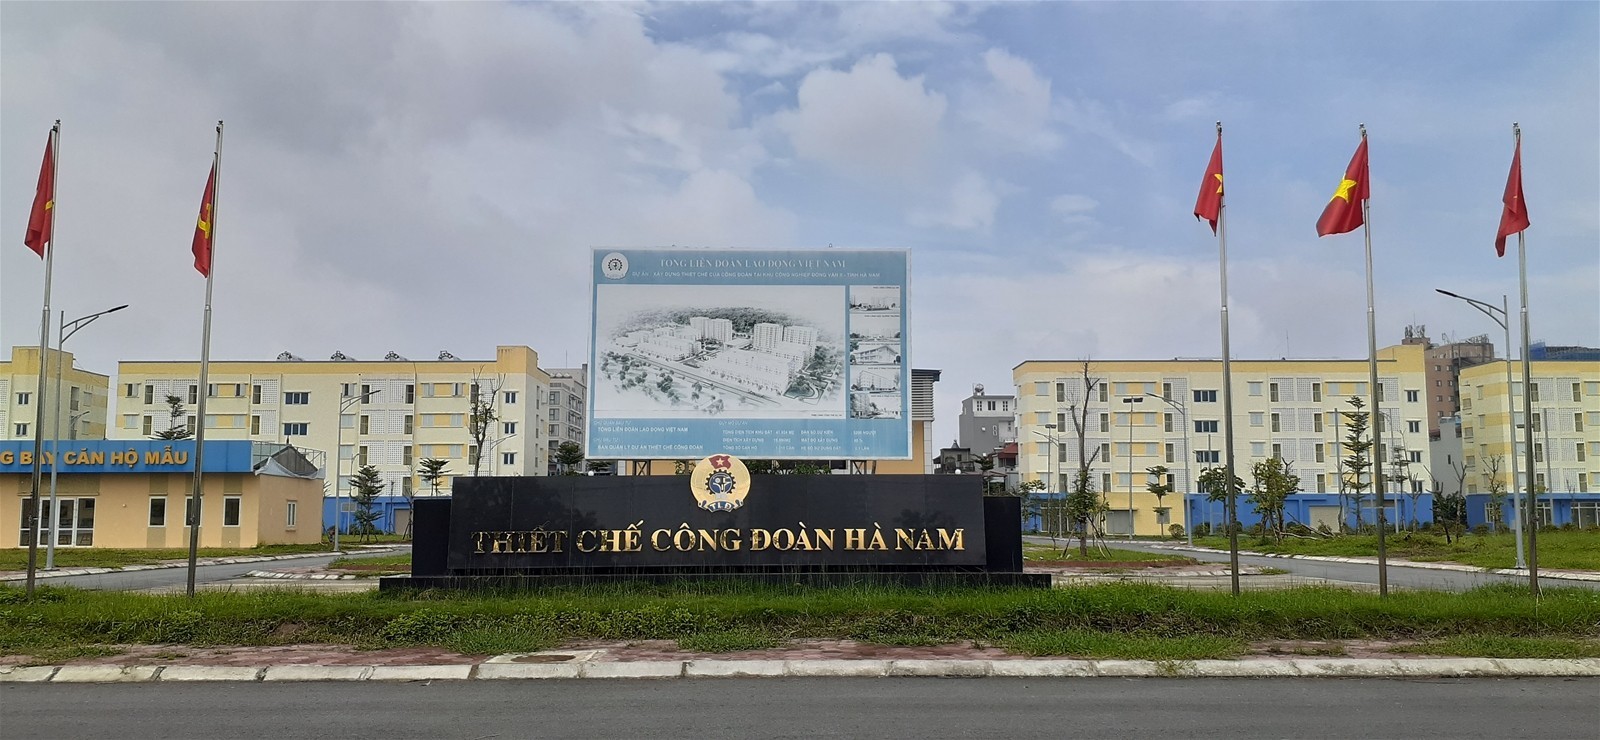 
Dự án Thiết chế Công đoàn tại Khu công nghiệp Đồng Văn II (tỉnh Hà Nam).
